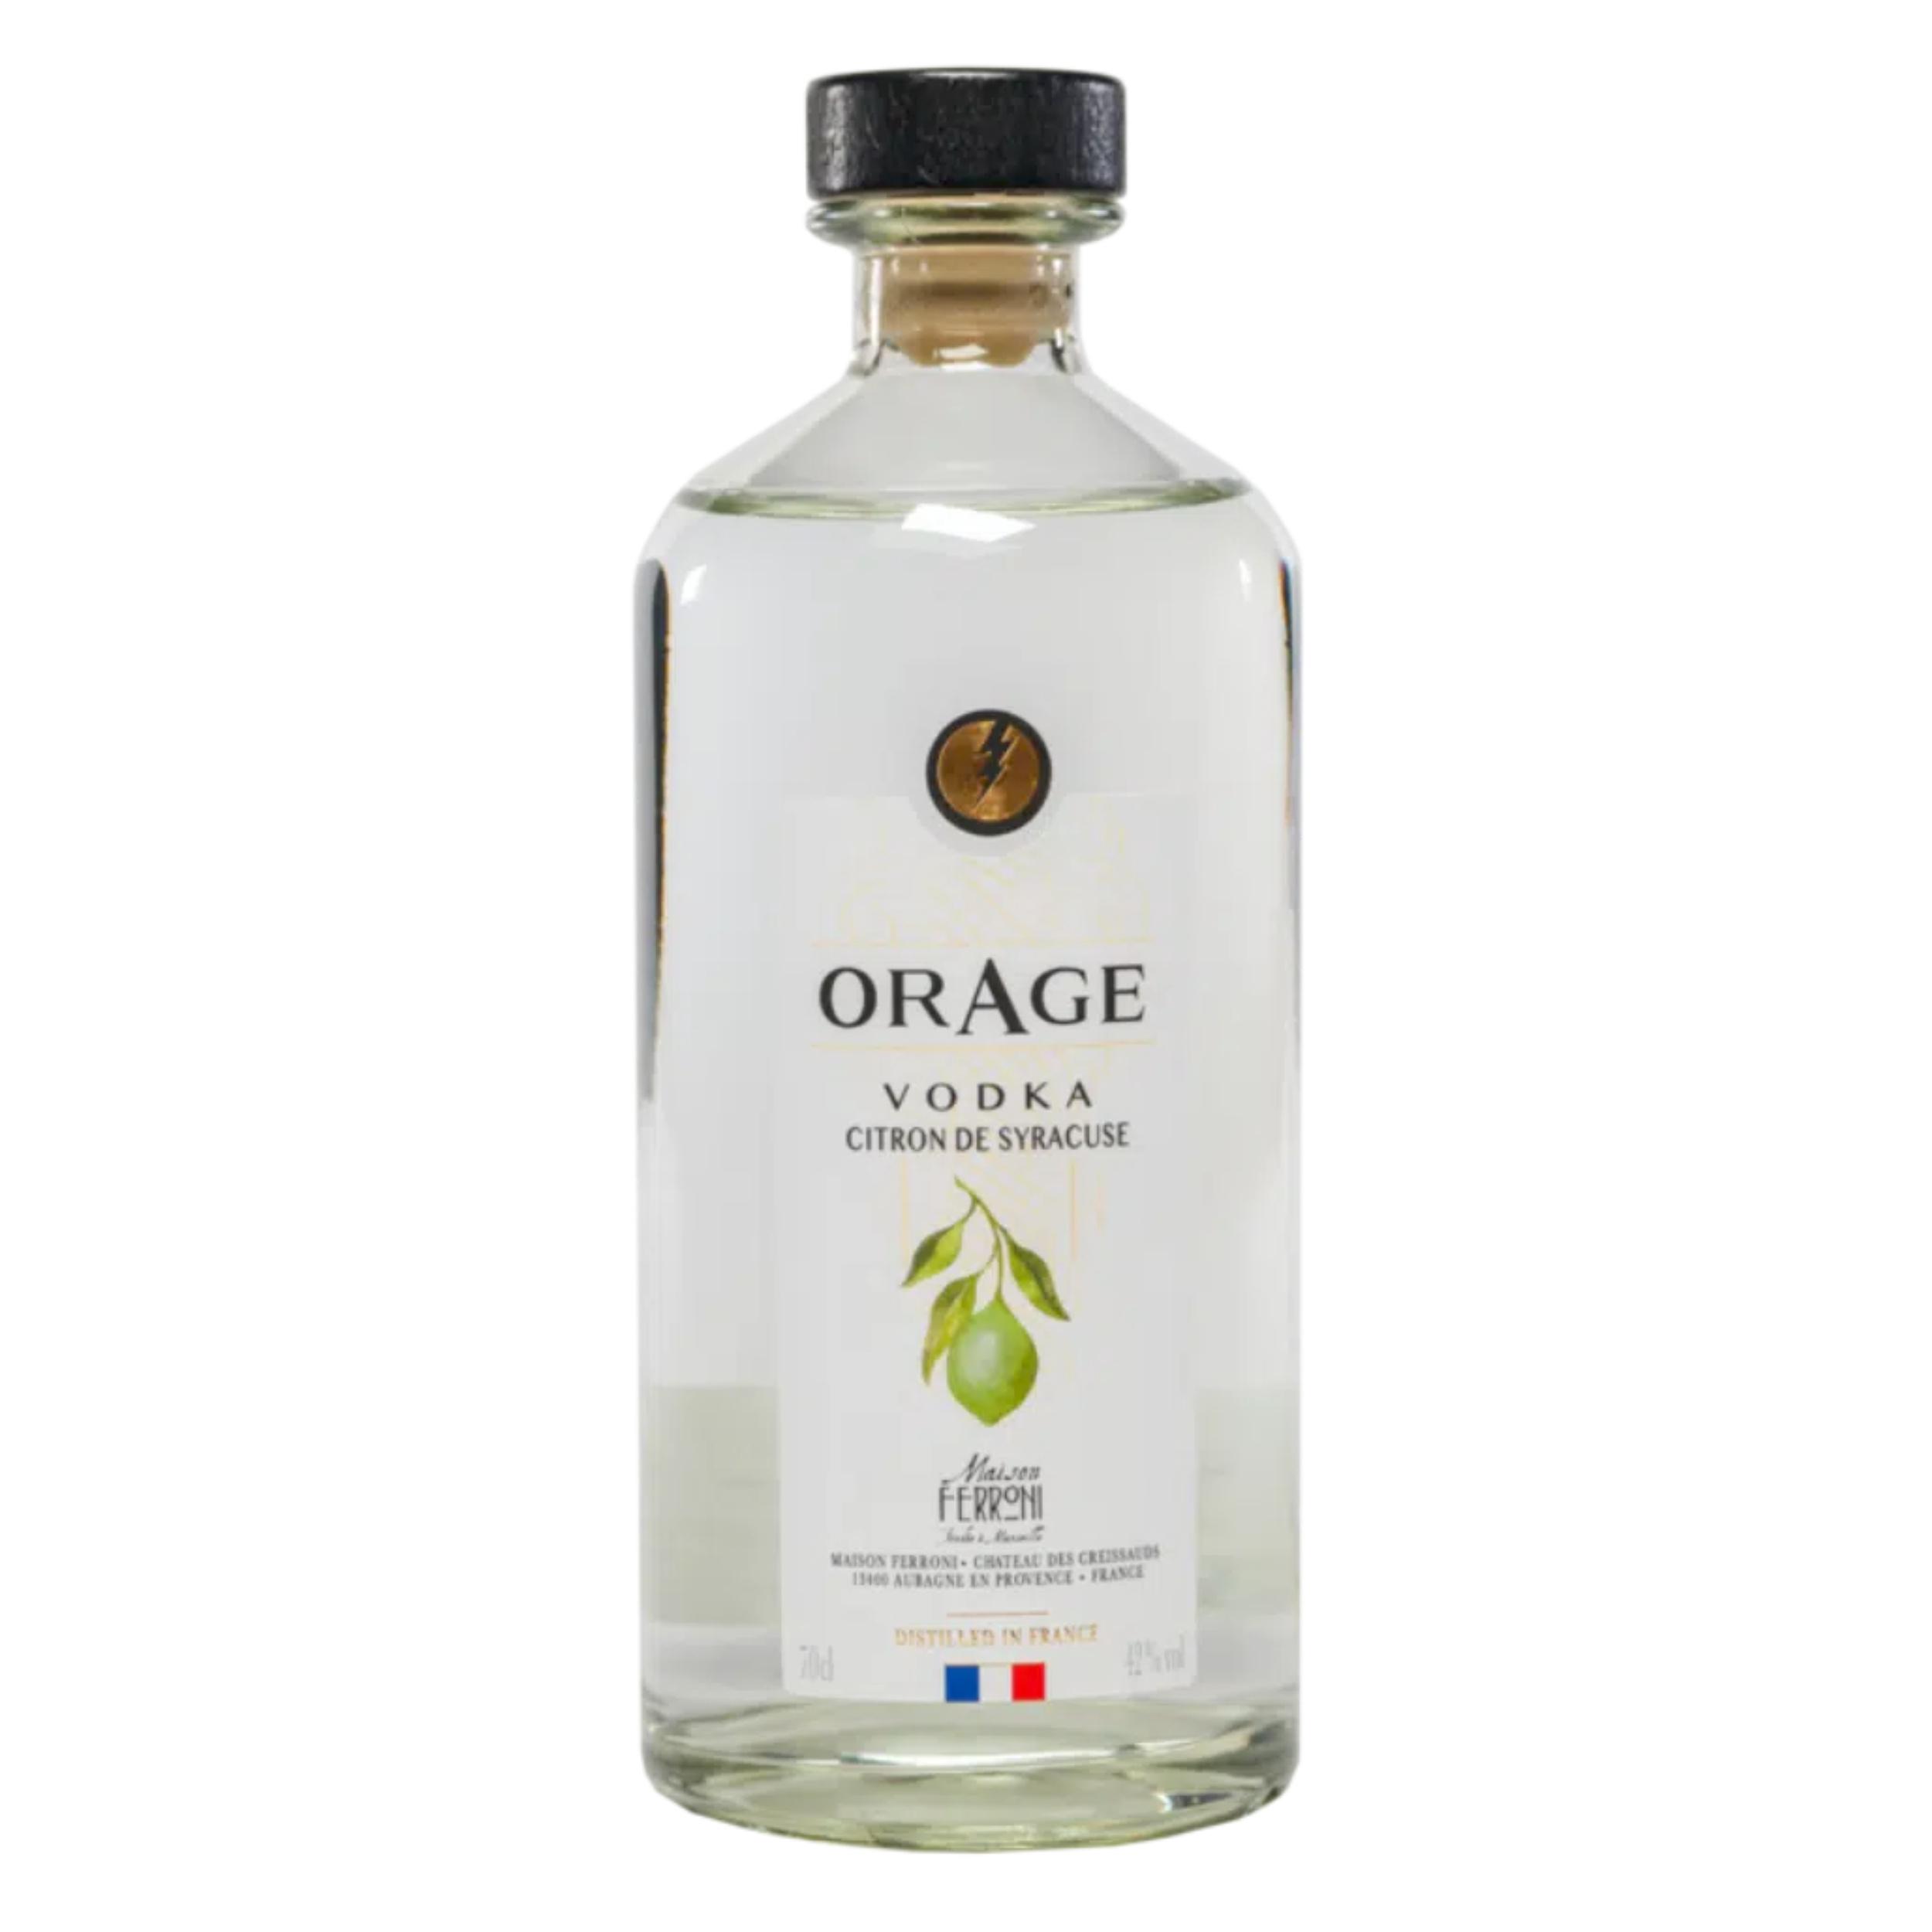 Orage-Vodka-Citron-Syracuse-Maison-Ferroni